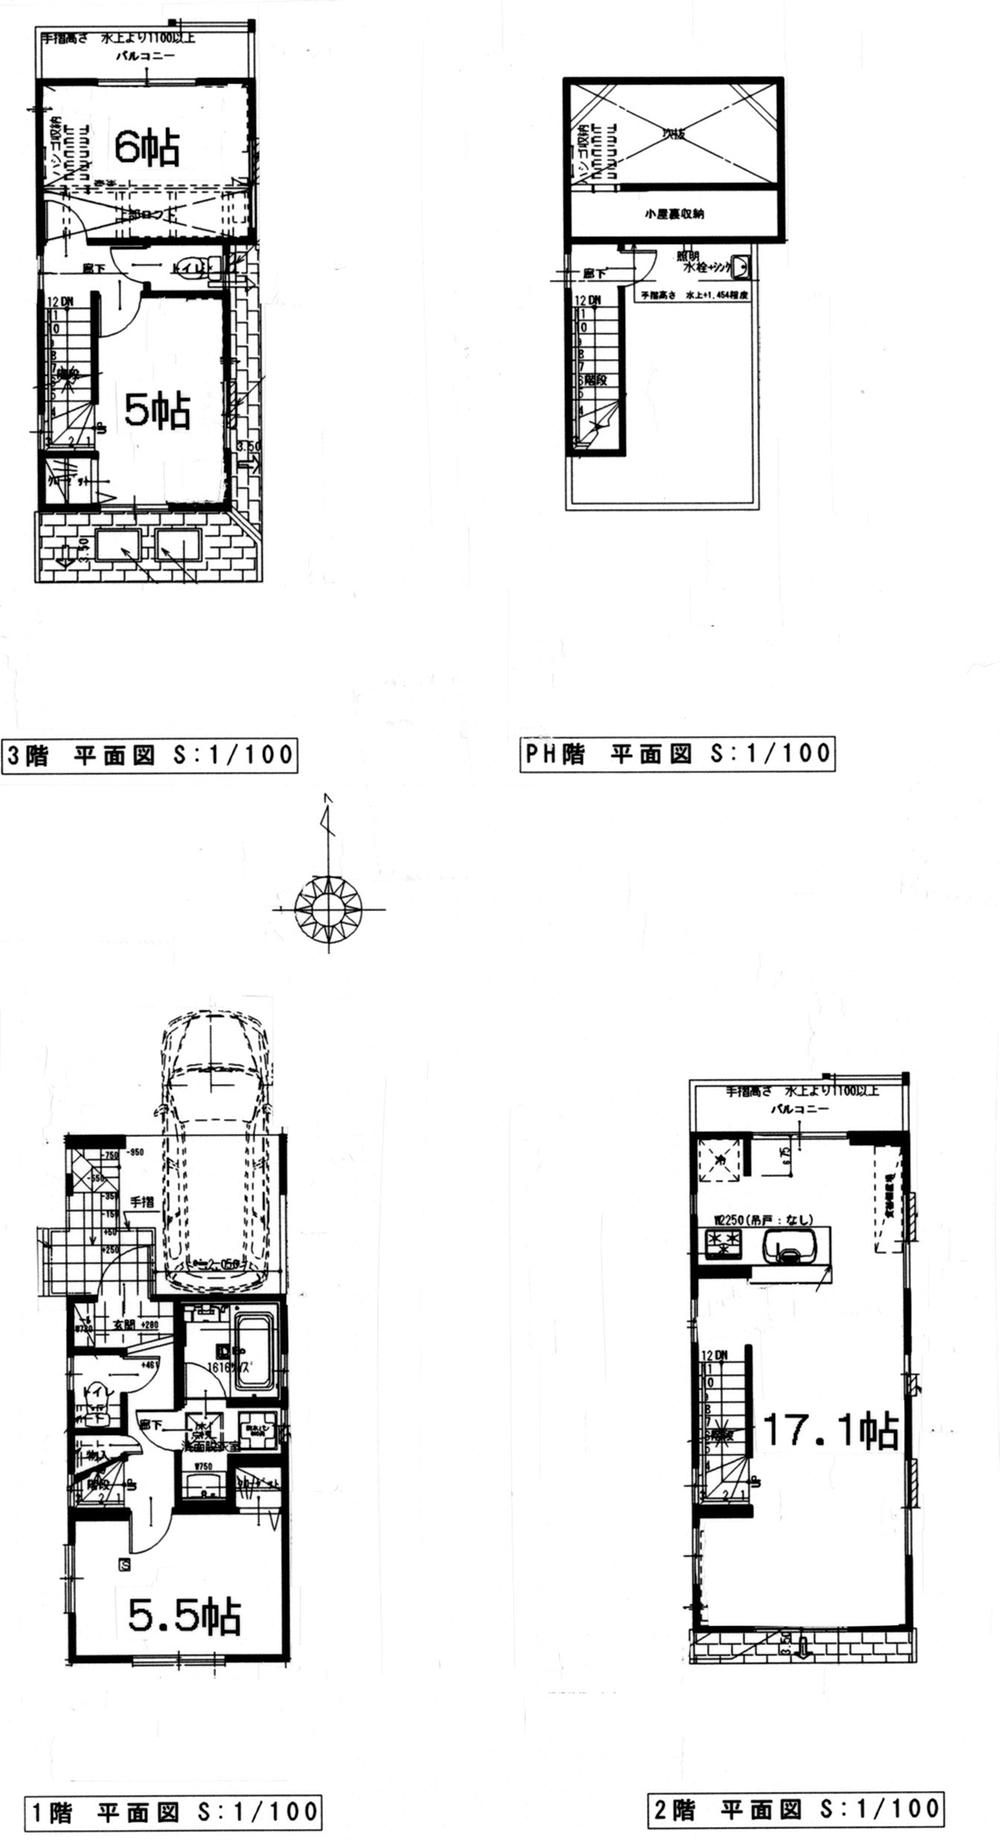 Floor plan. (A Building), Price 41,800,000 yen, 2LDK+S, Land area 52.78 sq m , Building area 83.83 sq m